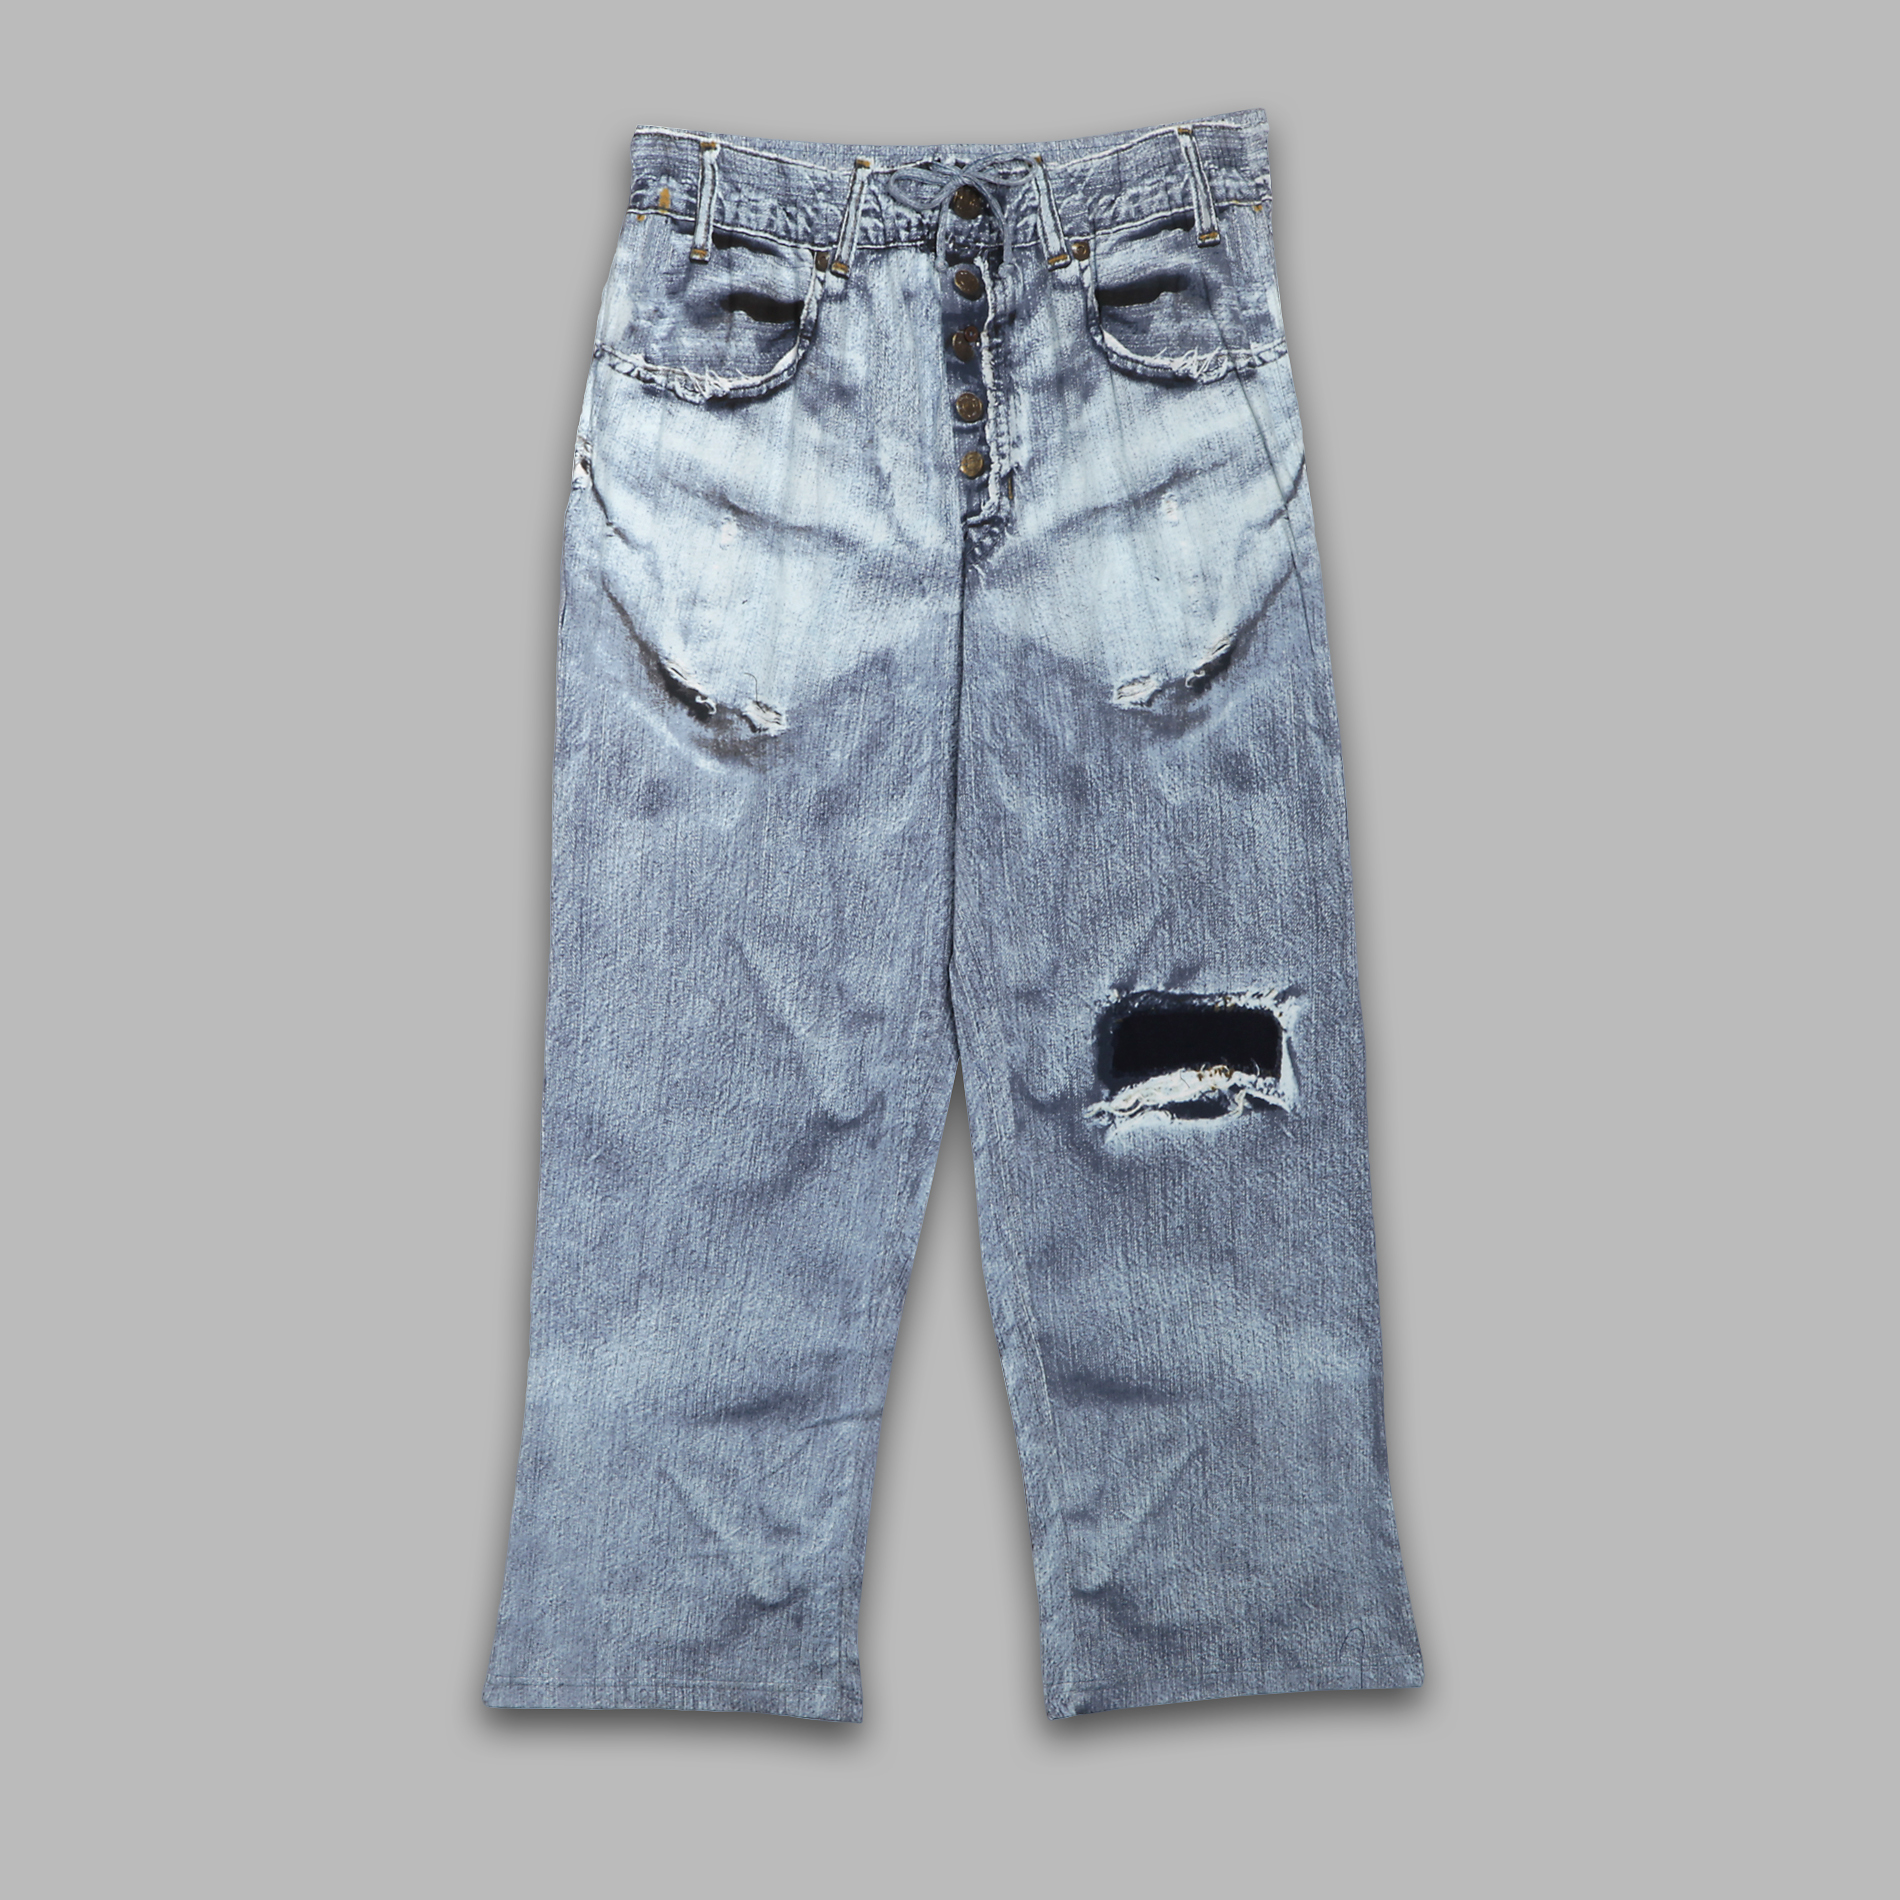 Joe Boxer Men's Deconstructed Denim Look Lounge Pants